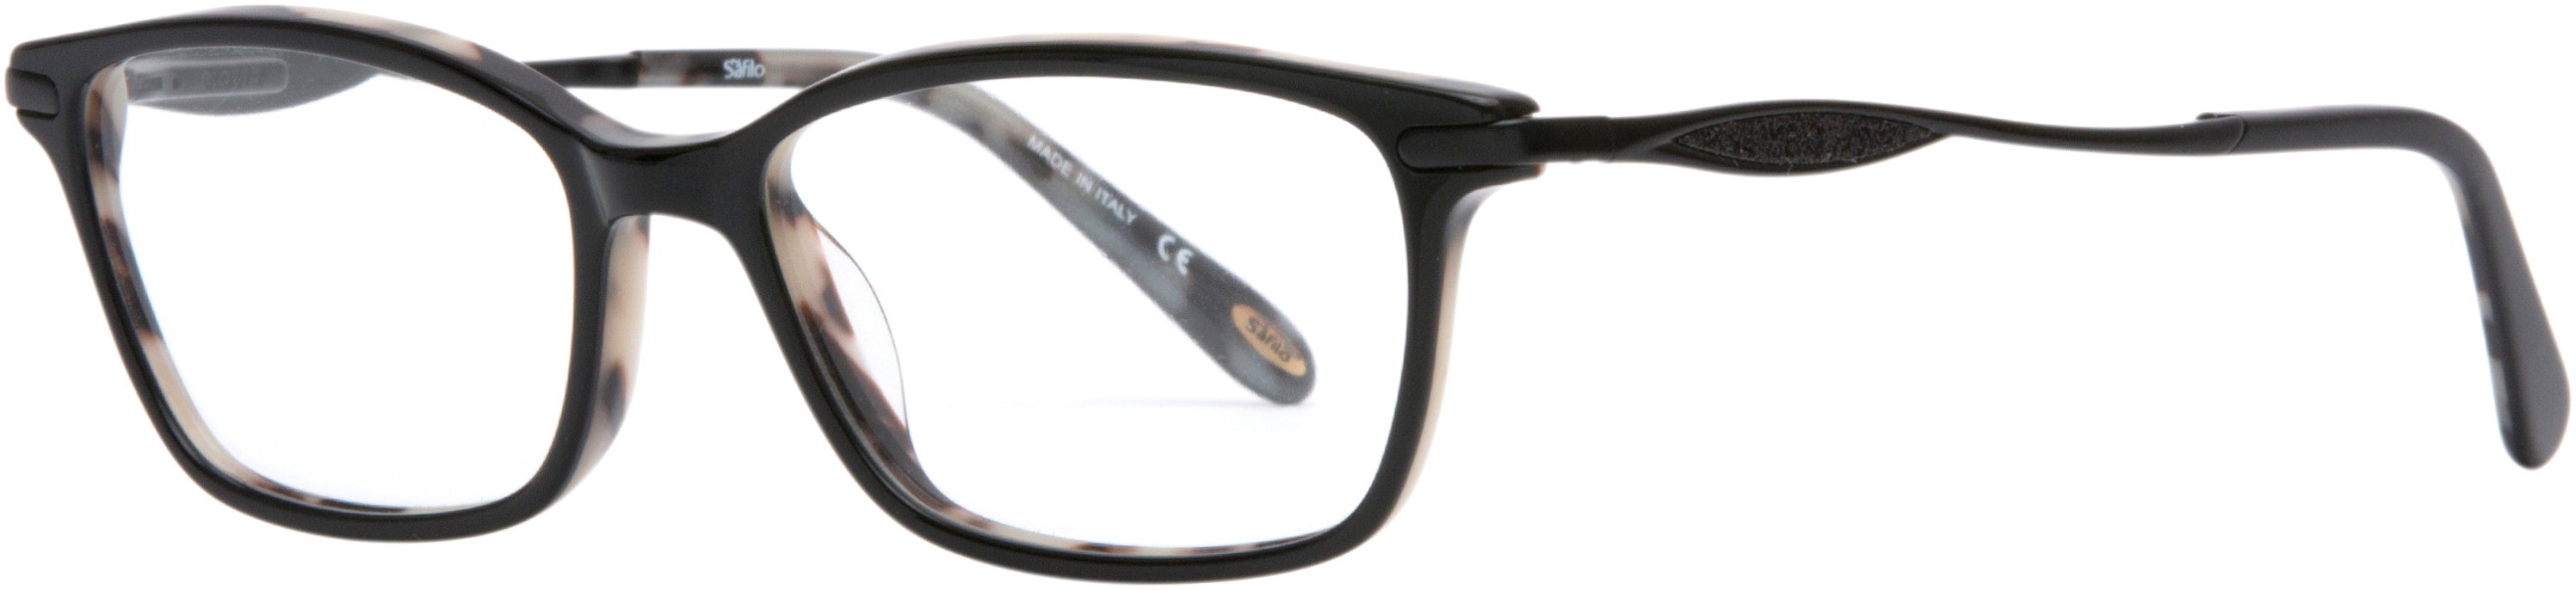  Emozioni 4051 Rectangular Eyeglasses 0TCB-0TCB  White Bksptt (00 Demo Lens)